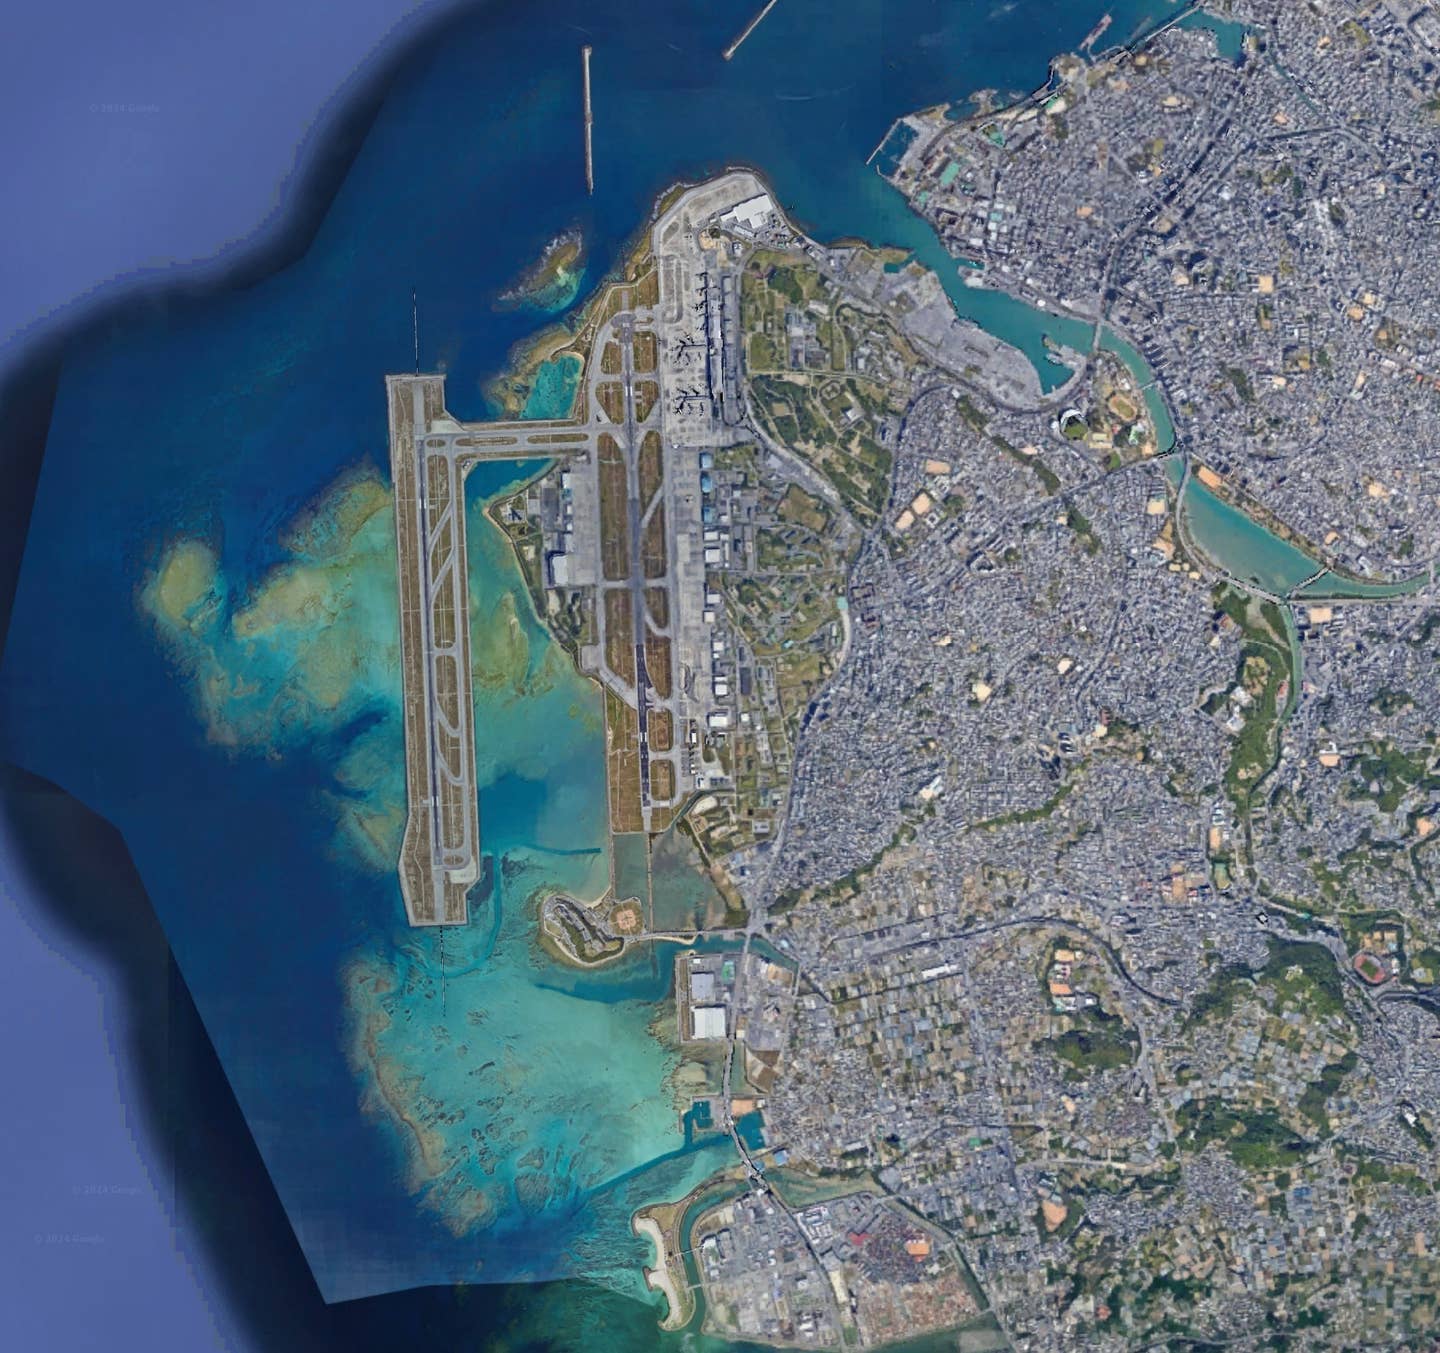 Naha Air Base seen via satellite image. <em>Google Earth</em>